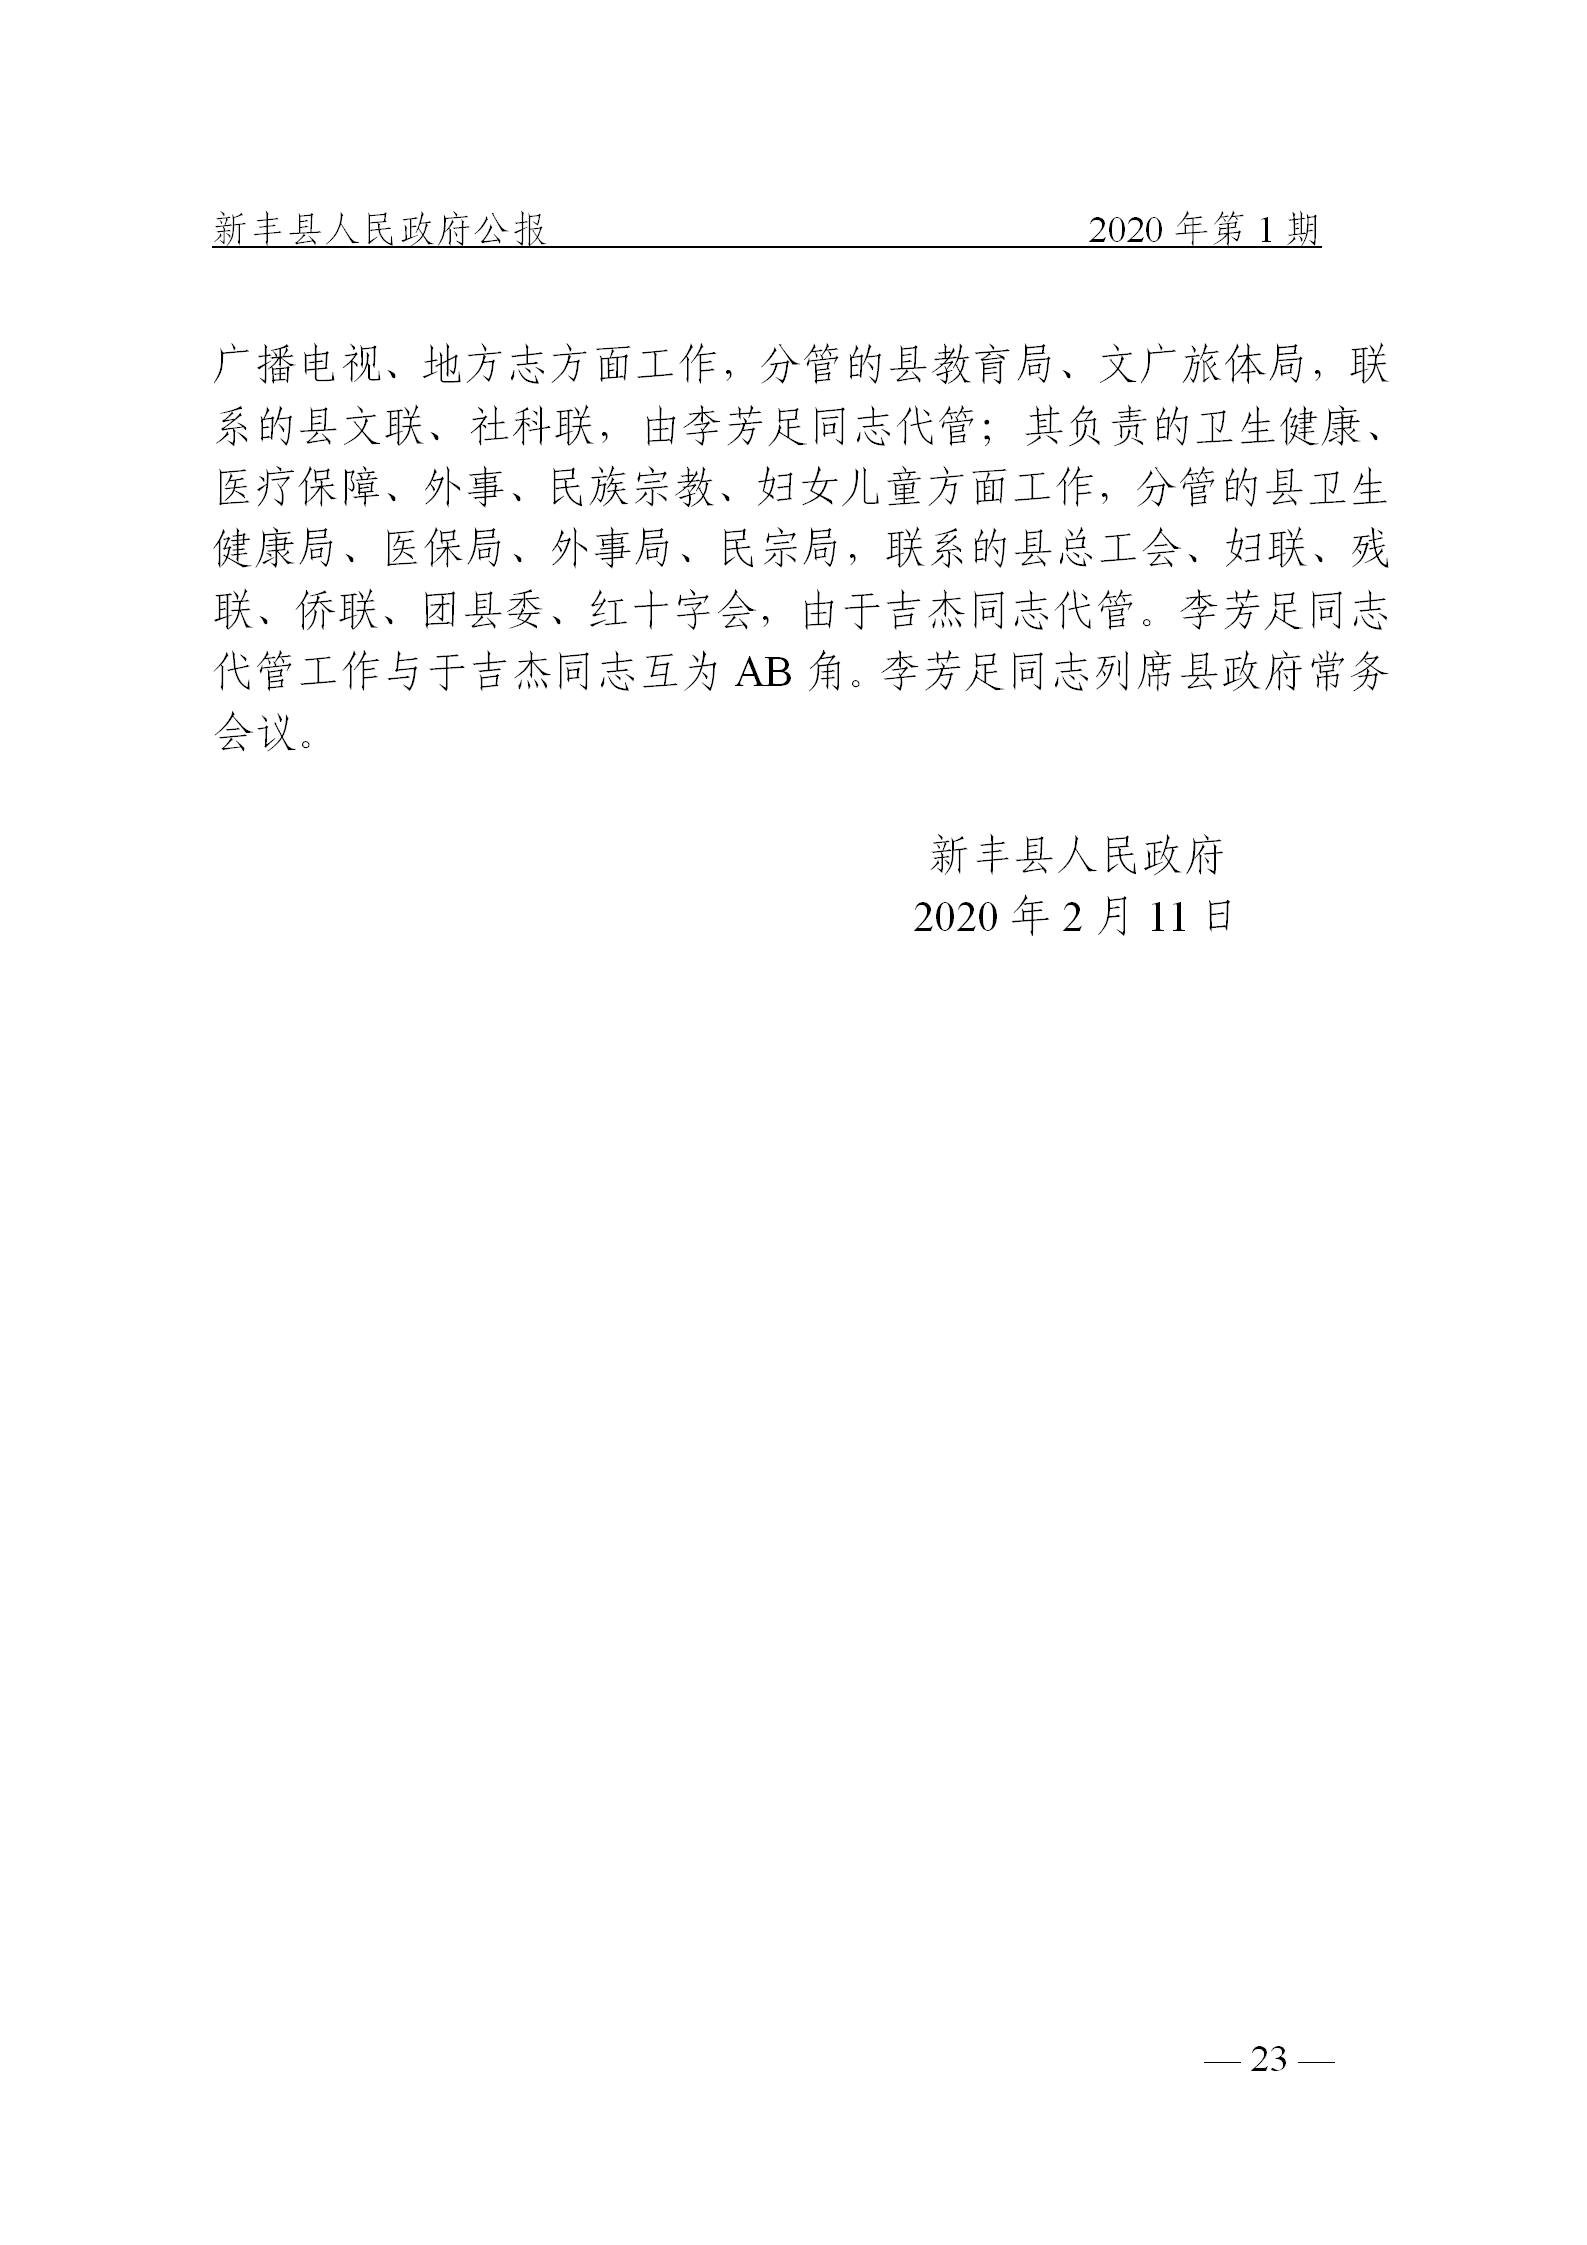 《新丰县人民政府公报》2020年第1期(1)_23.png